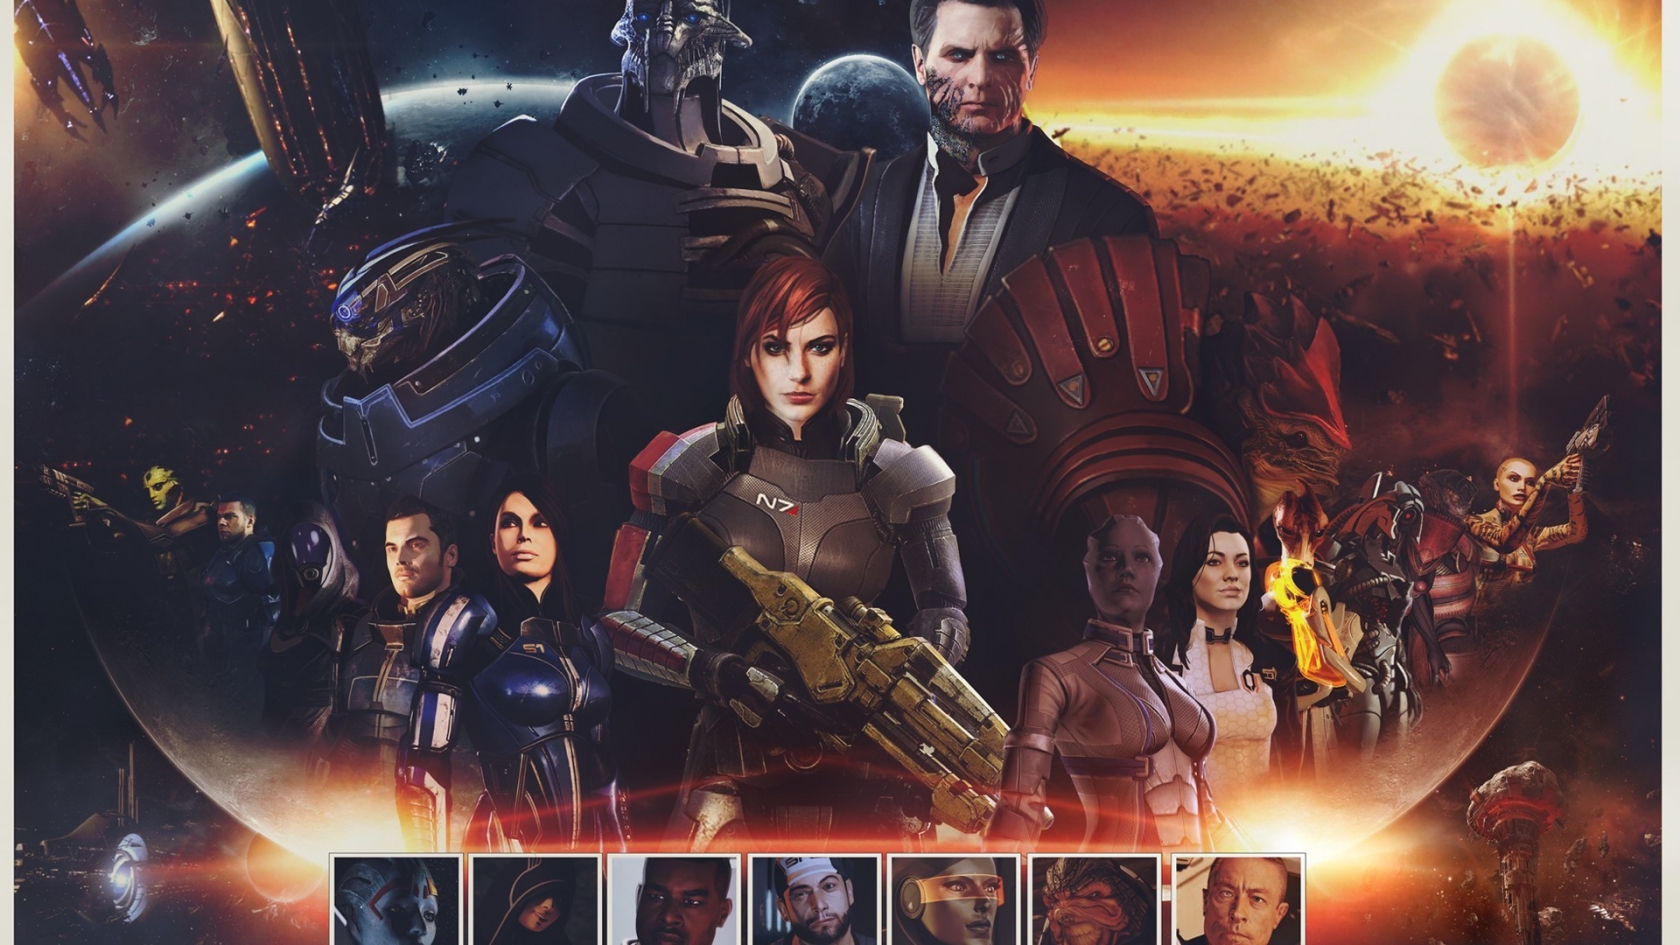 Mass Effect Zaeed Massani for 1680 x 945 HDTV resolution